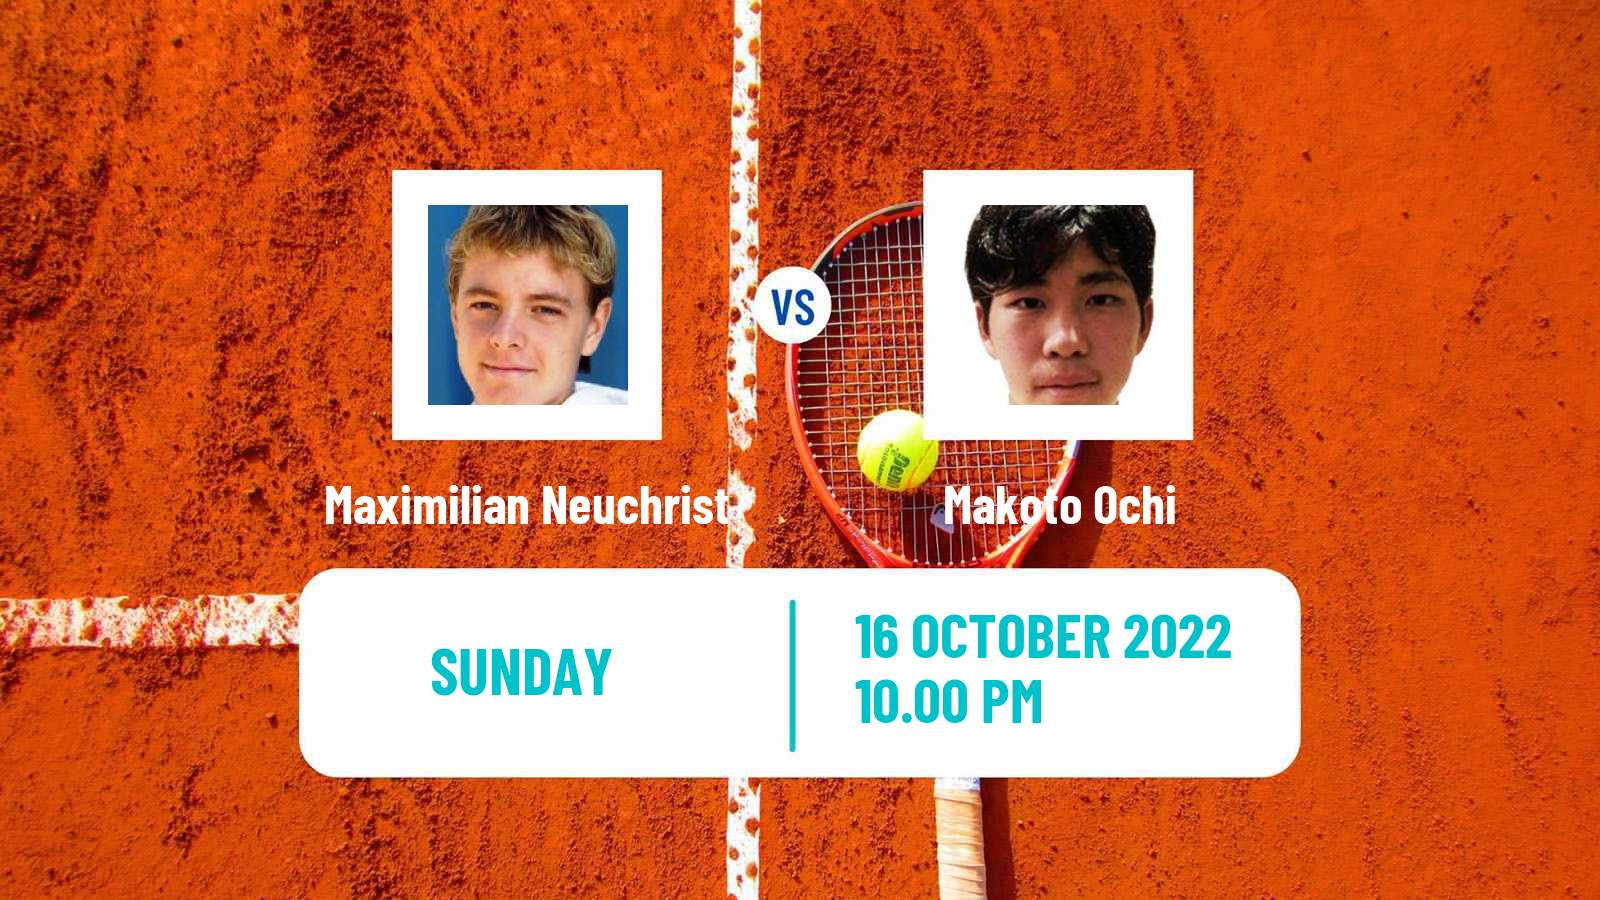 Tennis ATP Challenger Maximilian Neuchrist - Makoto Ochi